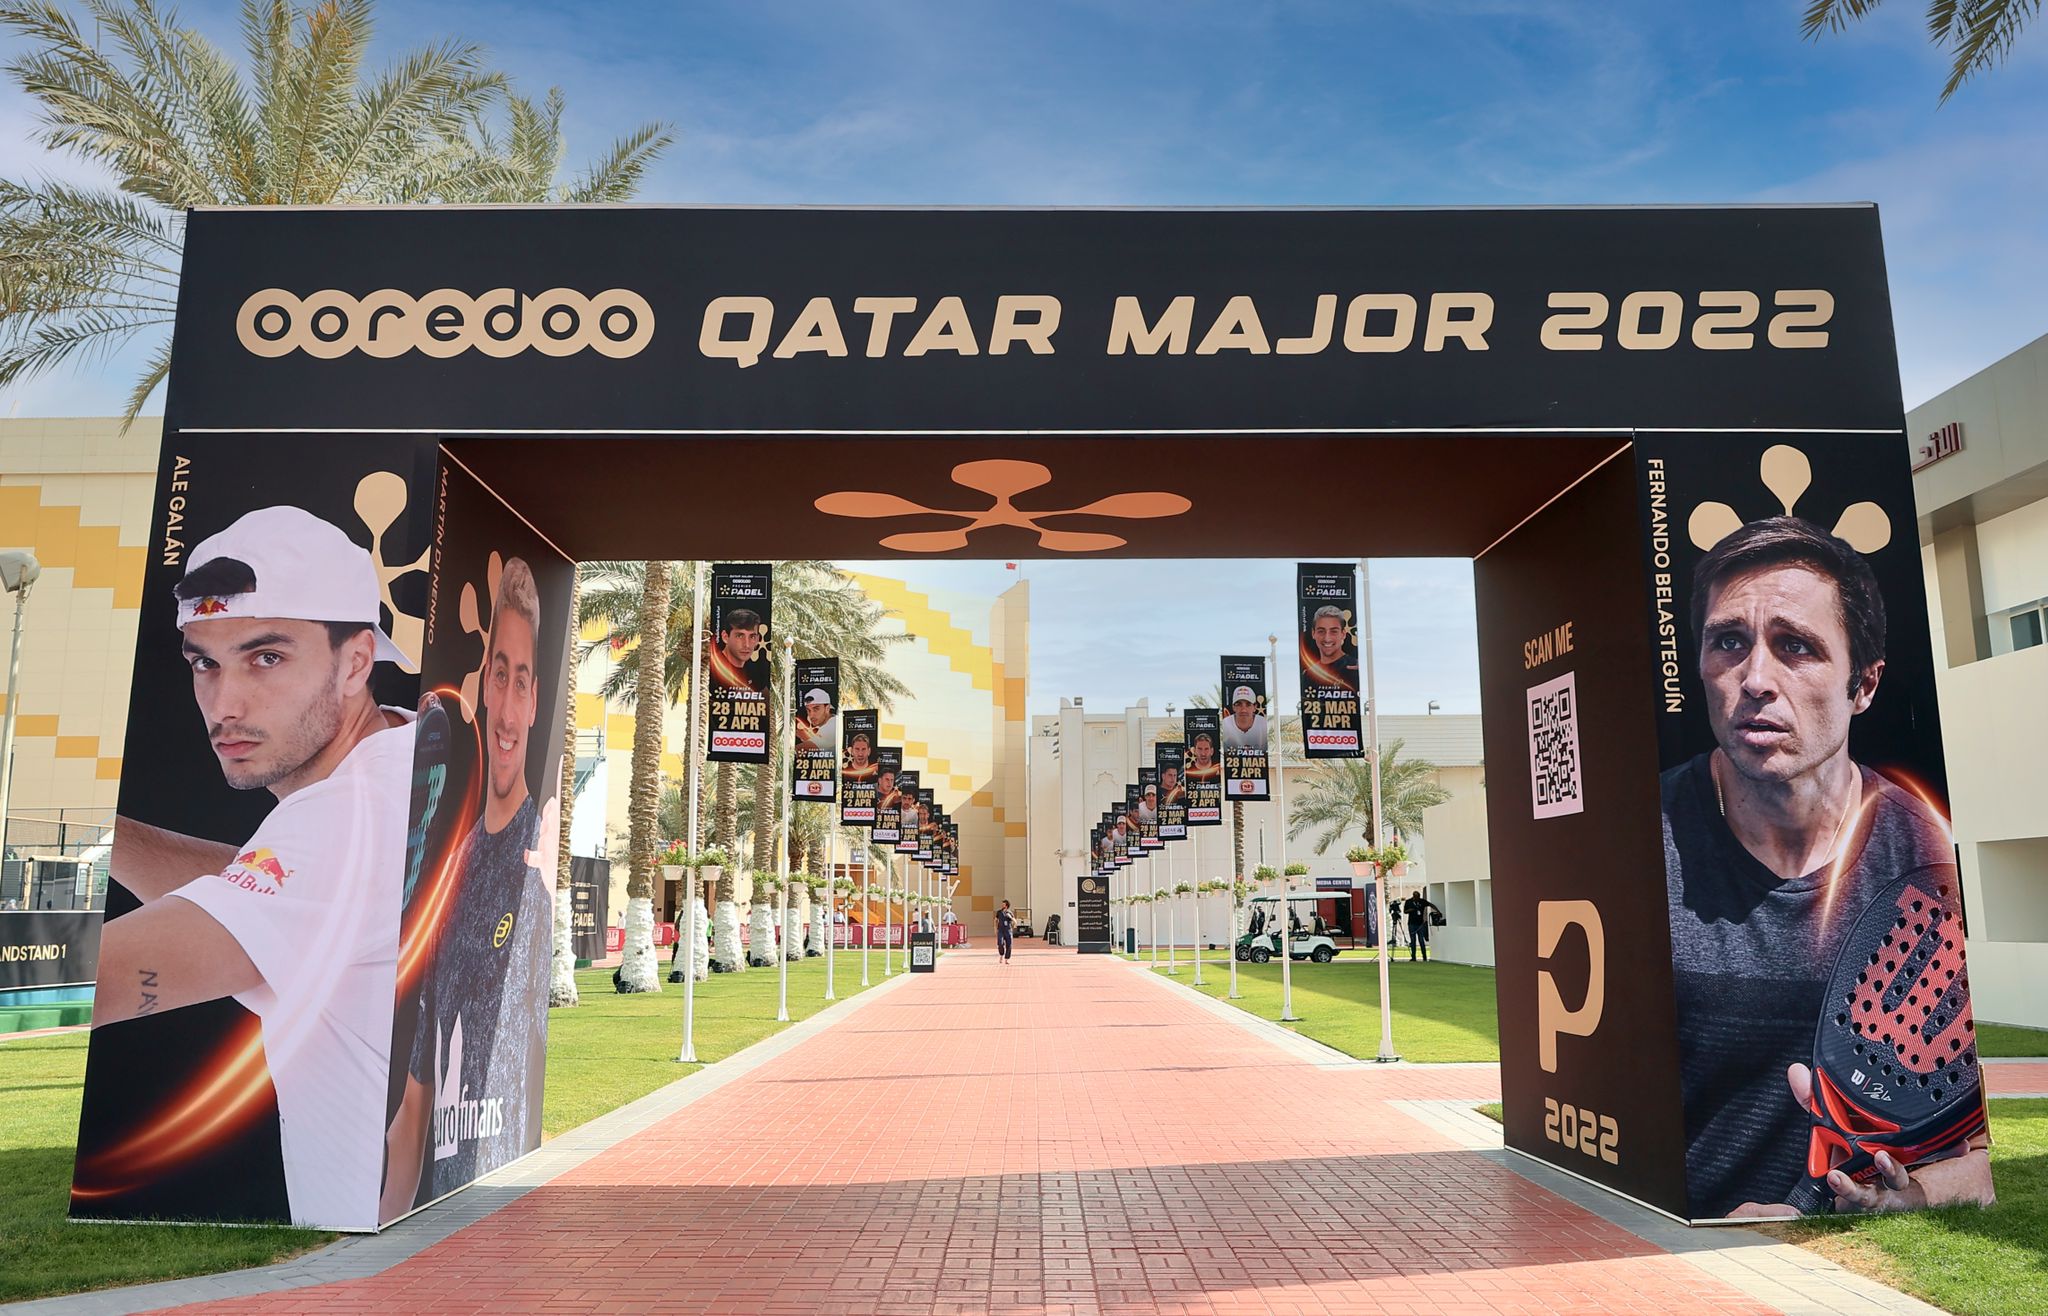 Sisäänpääsy Khalifa Doha Qatar Major 2022